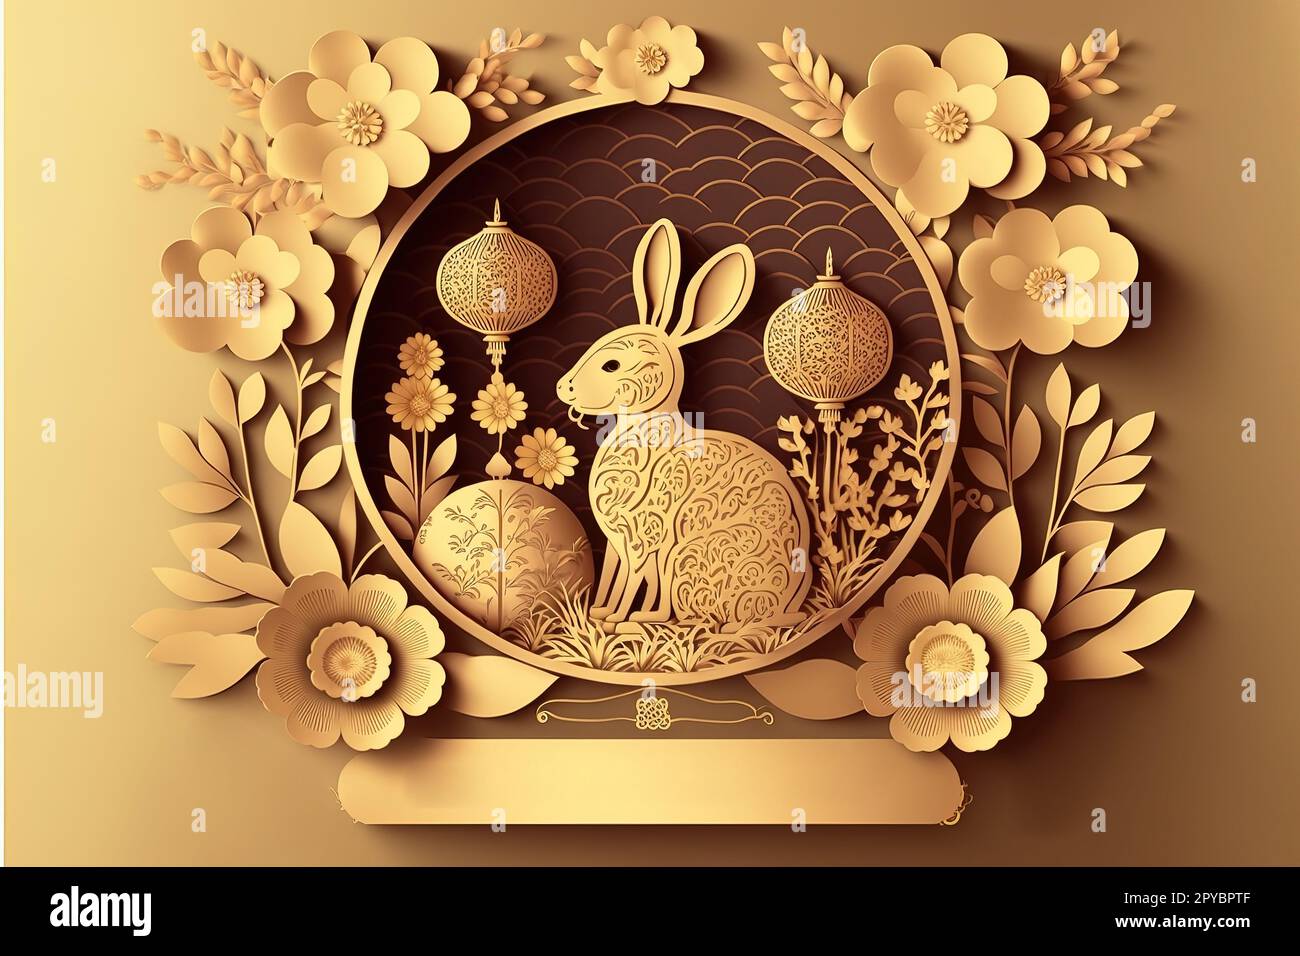 Joyeux nouvel an chinois 2023 année du signe du zodiaque lapin avec fleur, lanterne, éléments asiatiques style de papier doré coupé sur fond de couleur Banque D'Images